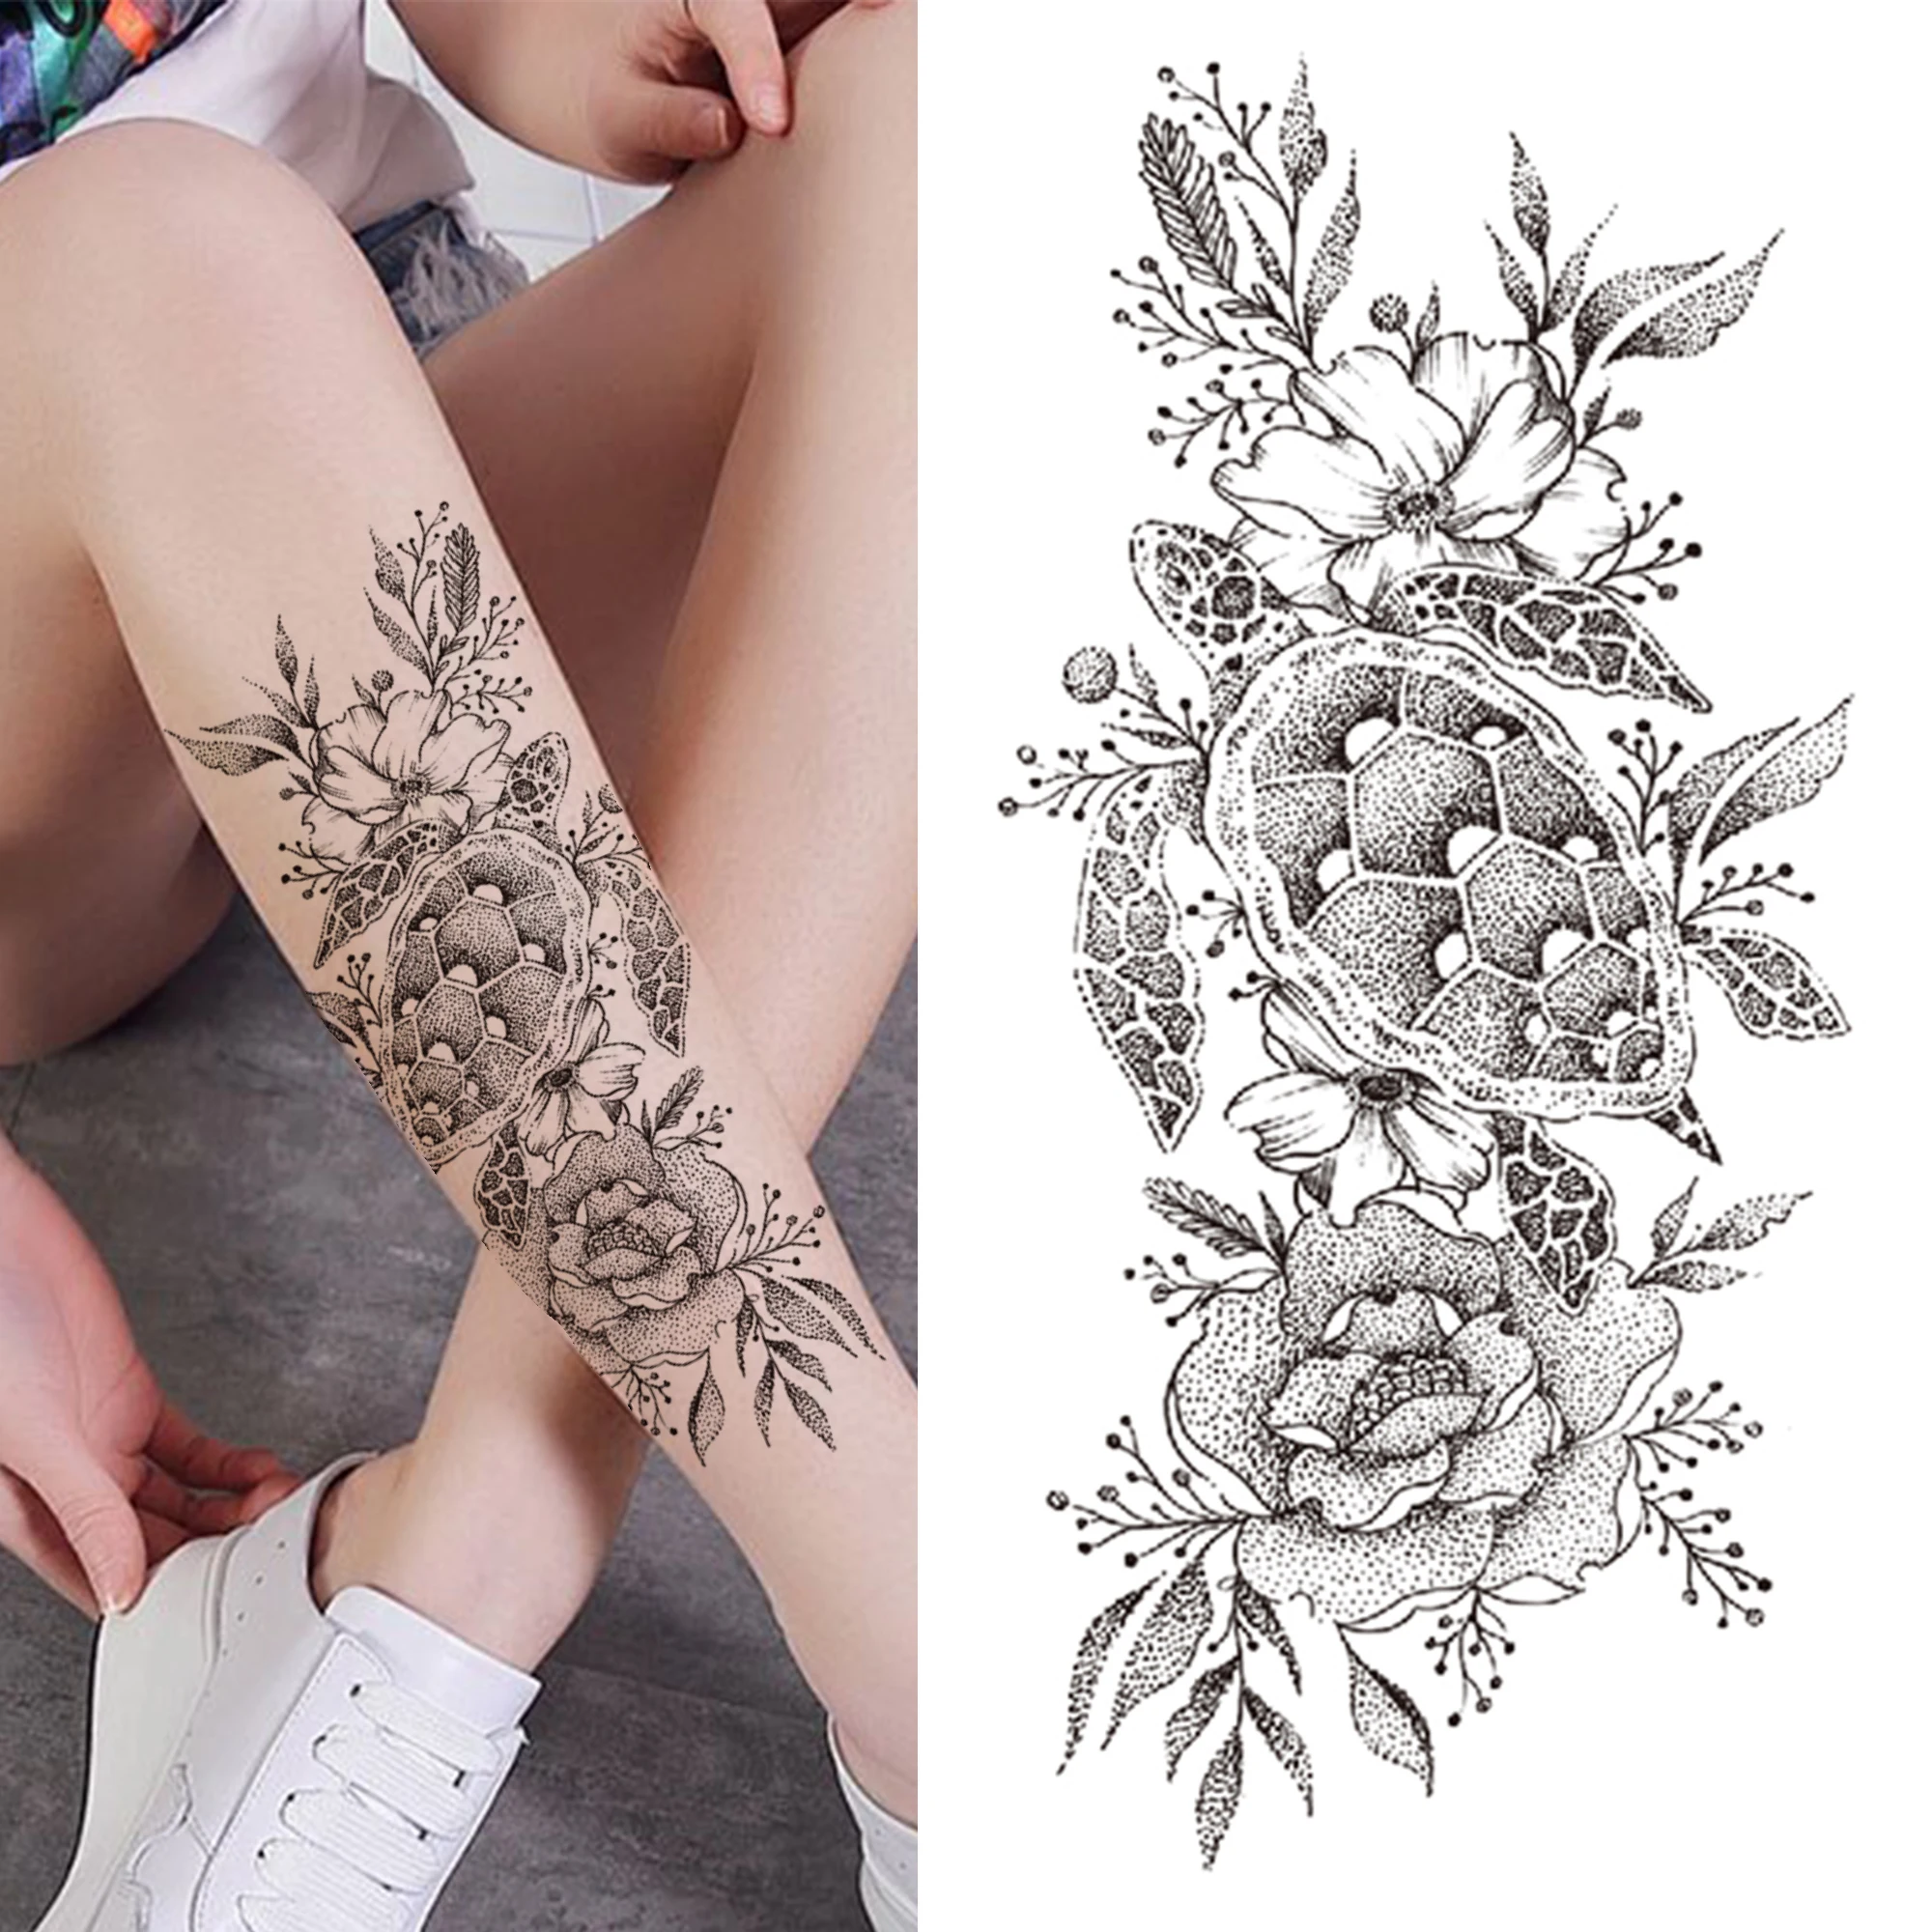 Kép /Nagy-virág-ideiglenes-tetoválás-a-nők-lányok-hamis-3-136801-thumb.jpg